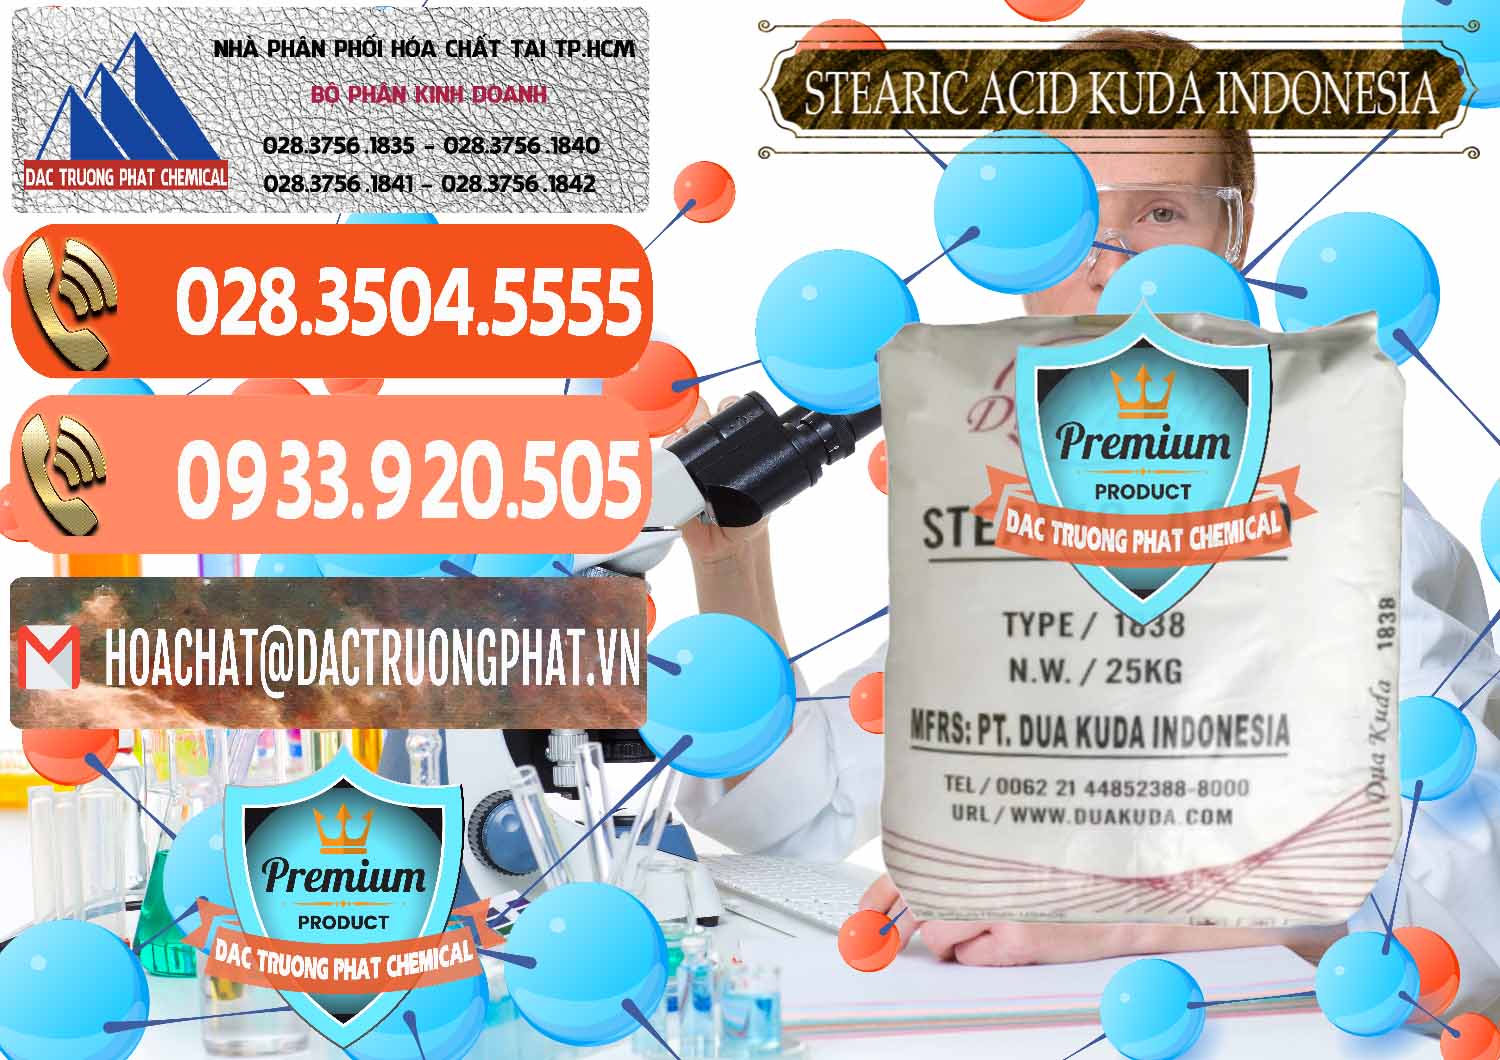 Công ty nhập khẩu - bán Axit Stearic - Stearic Acid Dua Kuda Indonesia - 0388 - Cty nhập khẩu và phân phối hóa chất tại TP.HCM - hoachatmientay.com